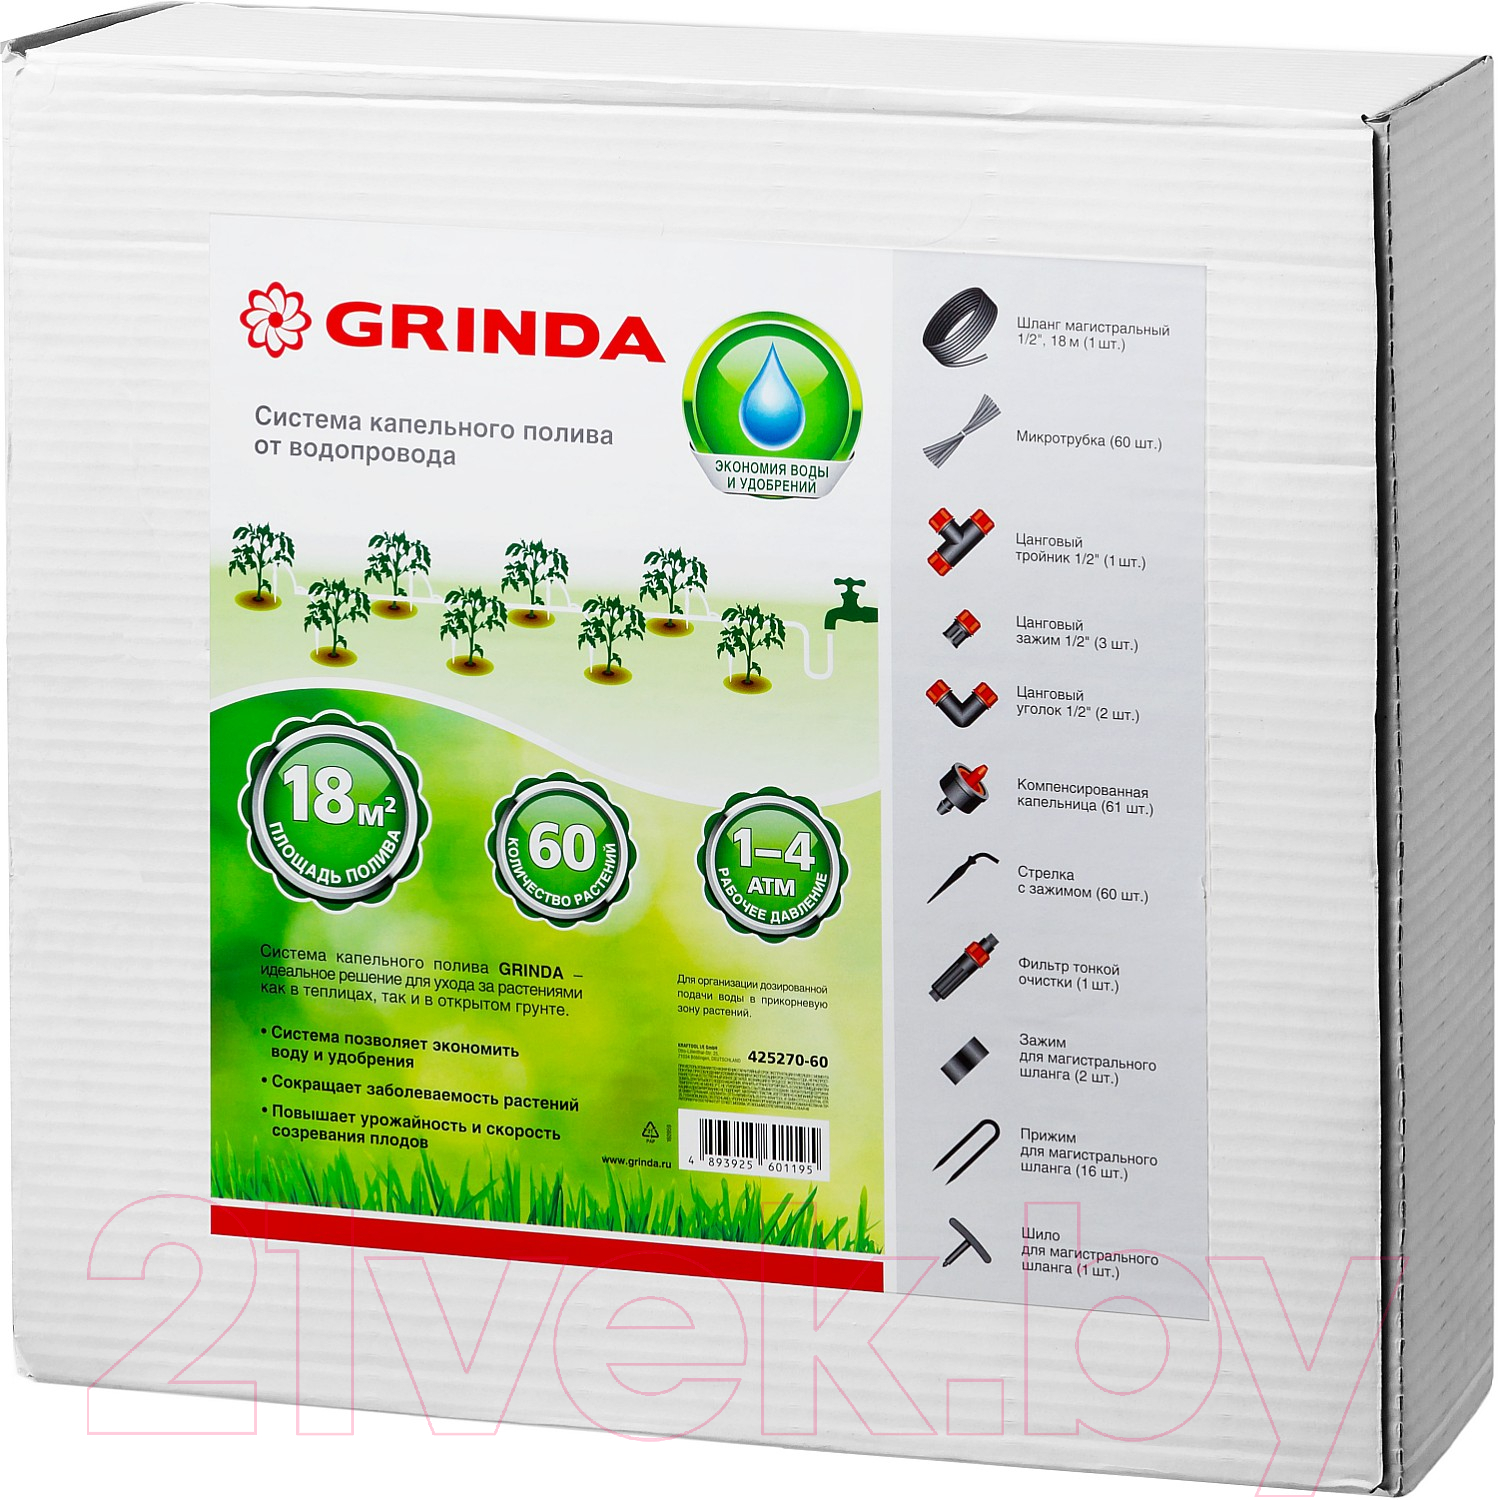 Система капельного полива Grinda 425270-60